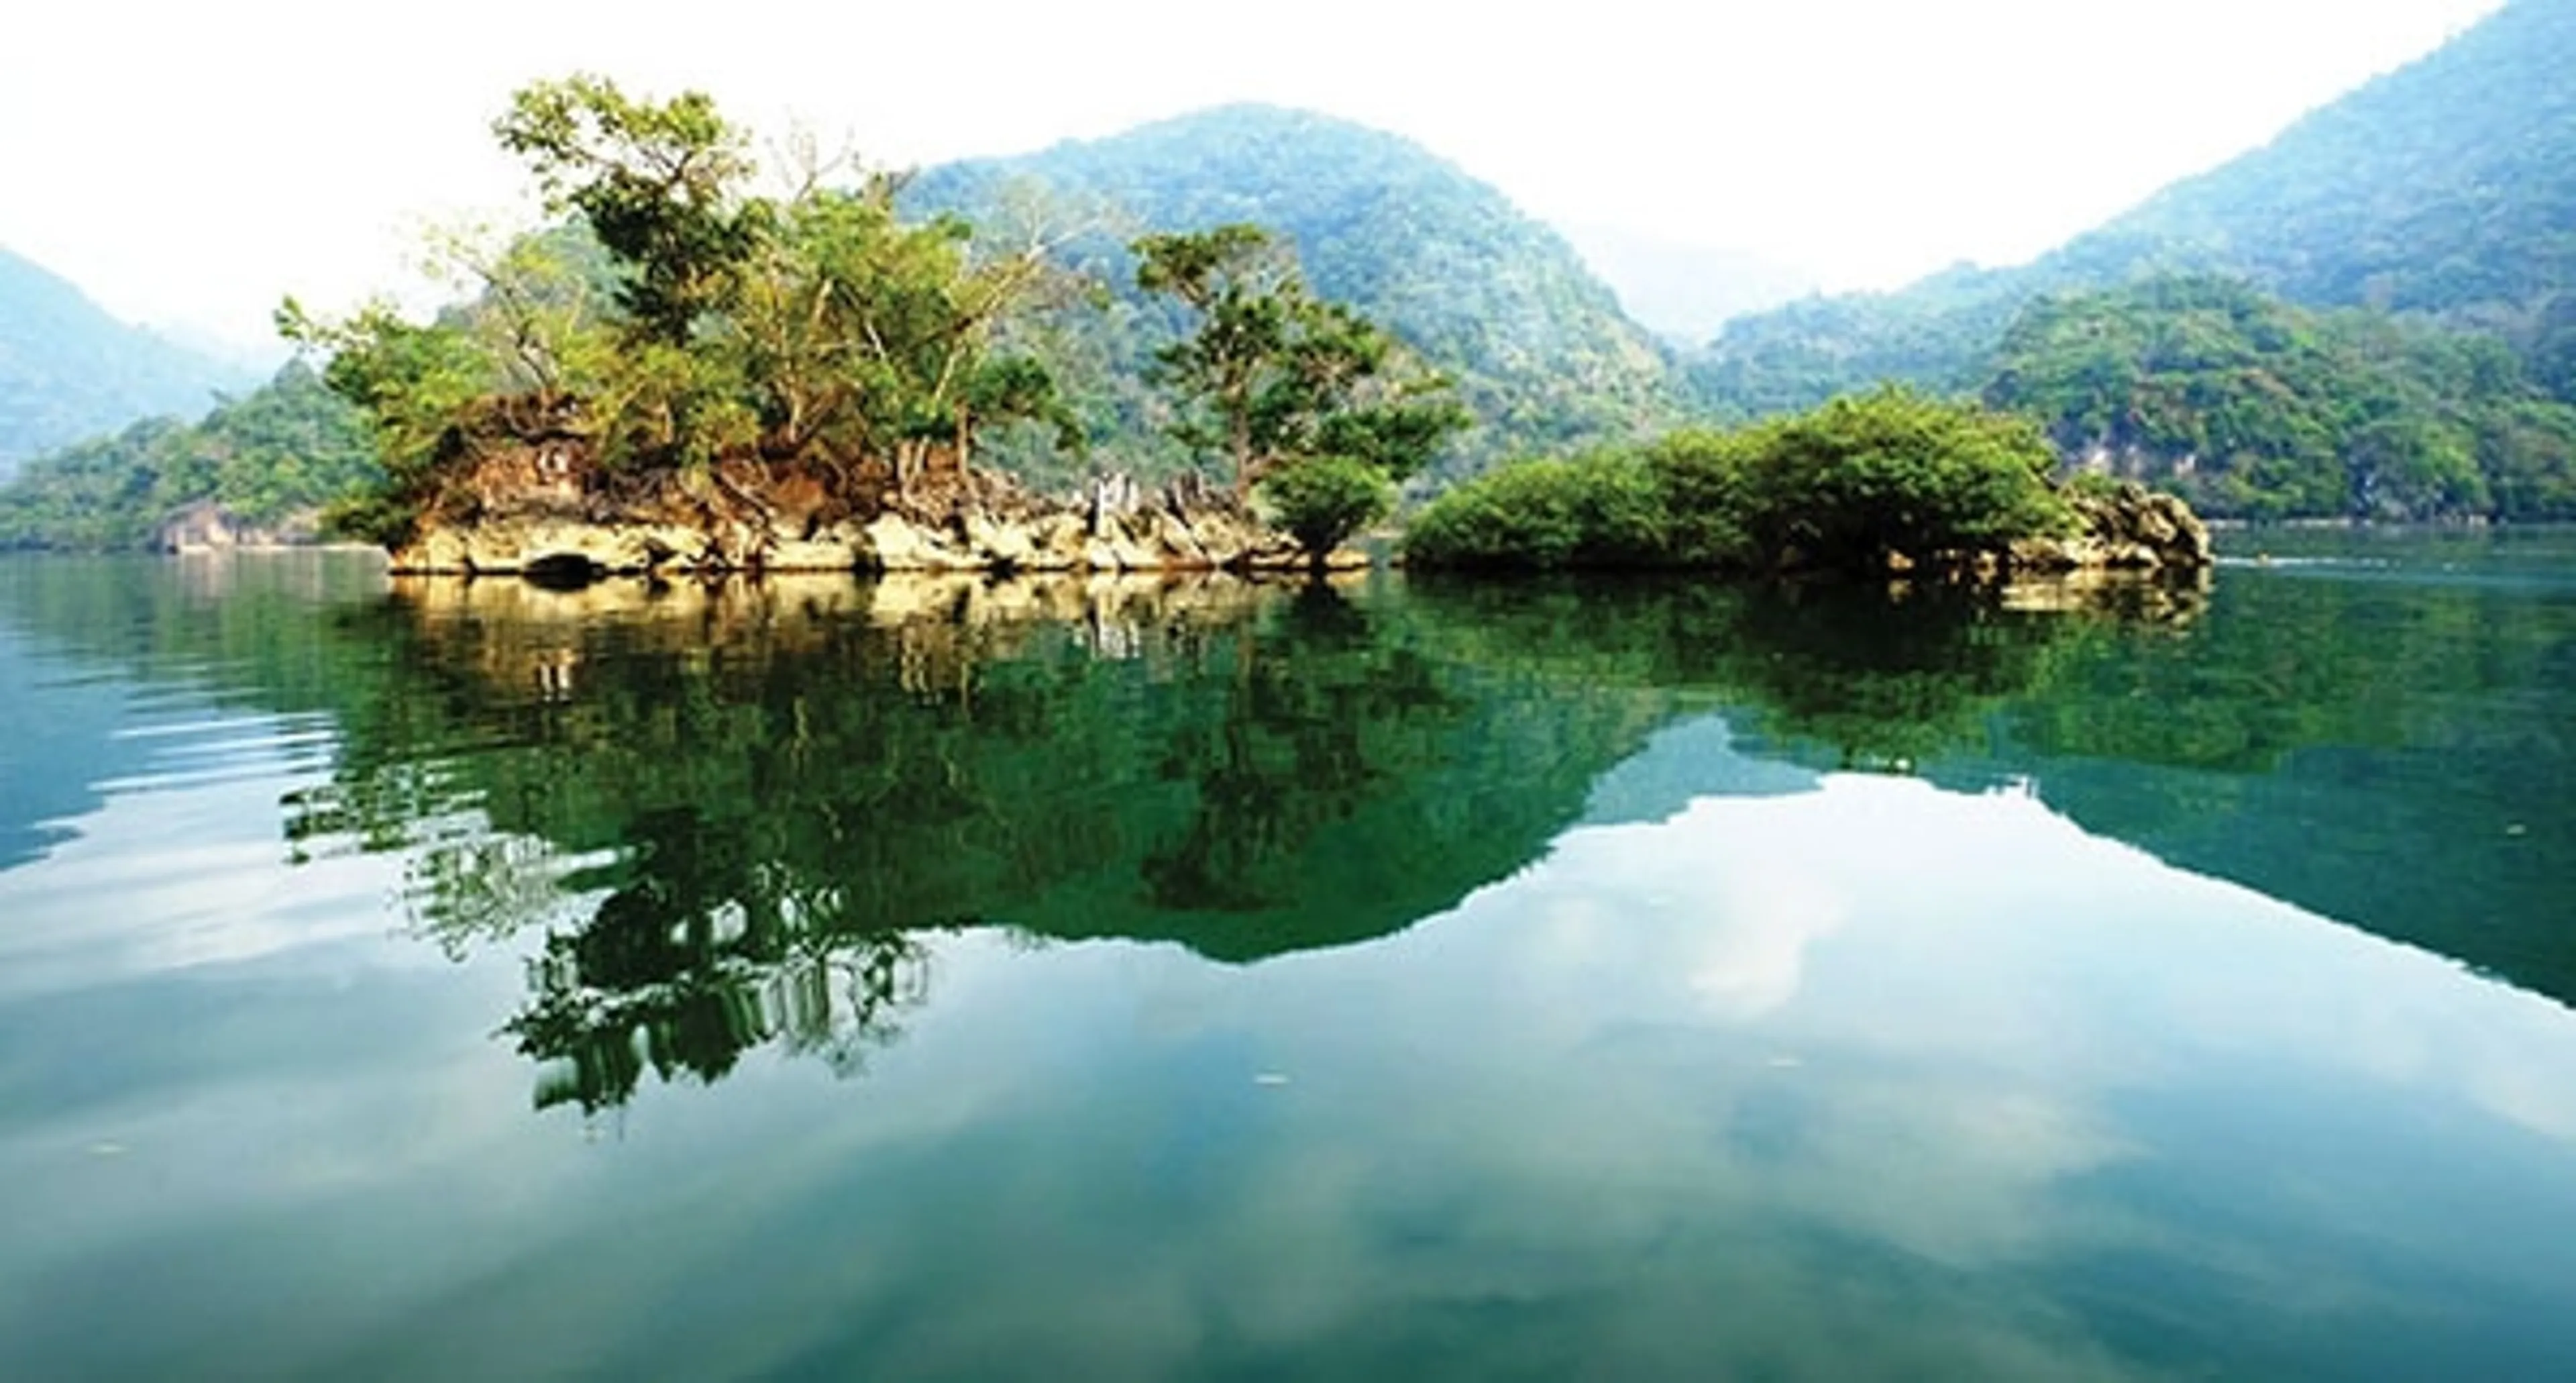 Tour du lịch hồ Ba Bể 2 ngày 1 đêm khởi hành từ Hà Nội